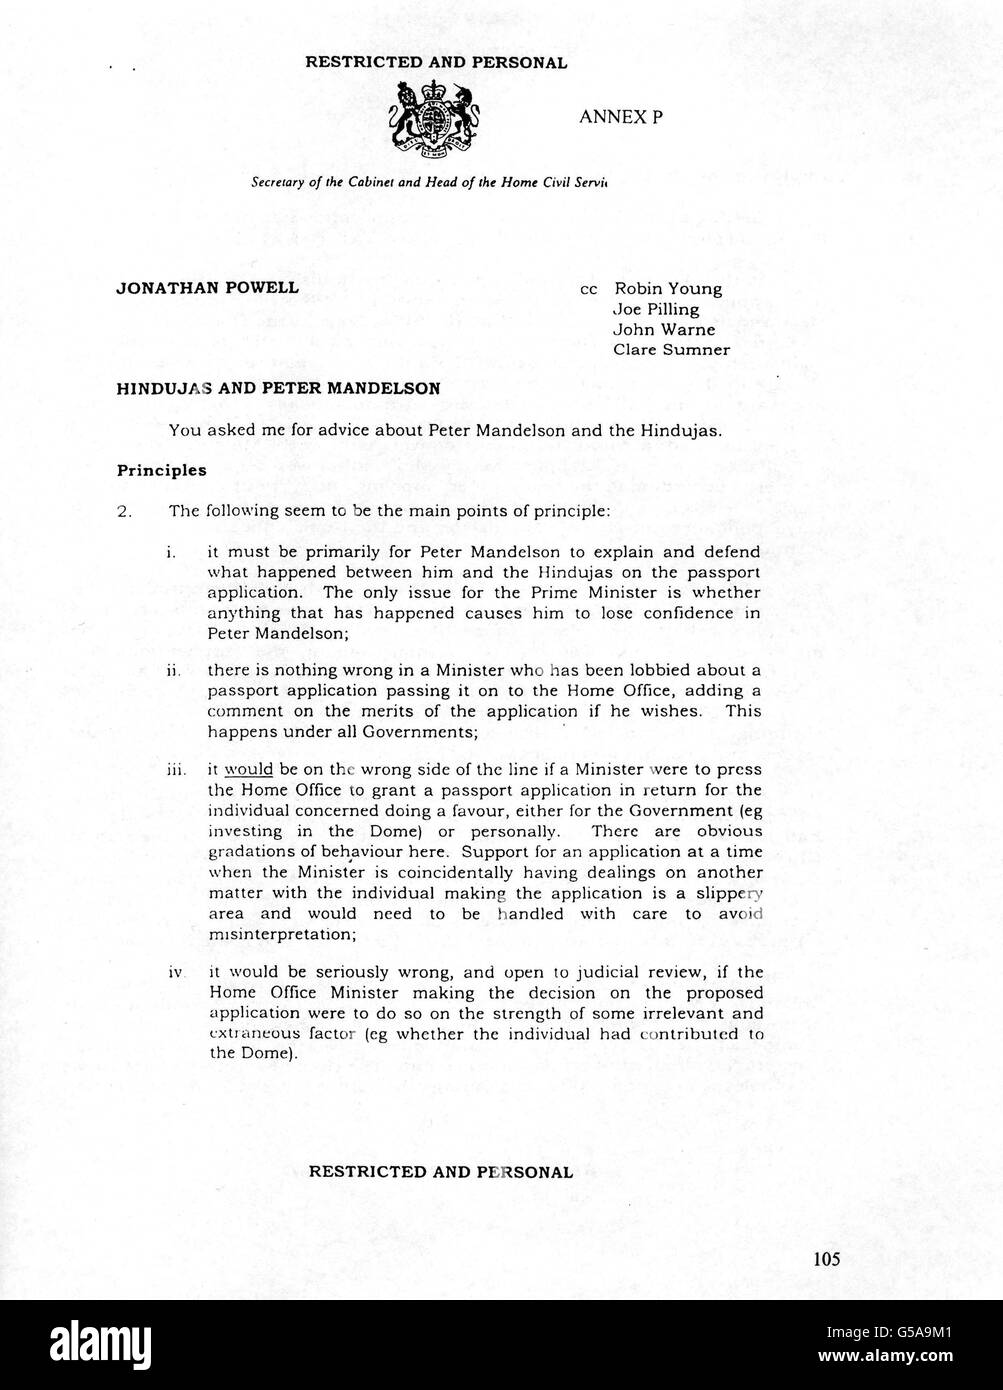 Un memorandum di Sir Richard Wilson, Segretario del Gabinetto, a Jonathan Powell, Capo di Stato maggiore del primo Ministro, come incluso nell'inchiesta di Sir Anthony Hammond su qualsiasi condotta impropria sul caso del passaporto Hinduja. Foto Stock